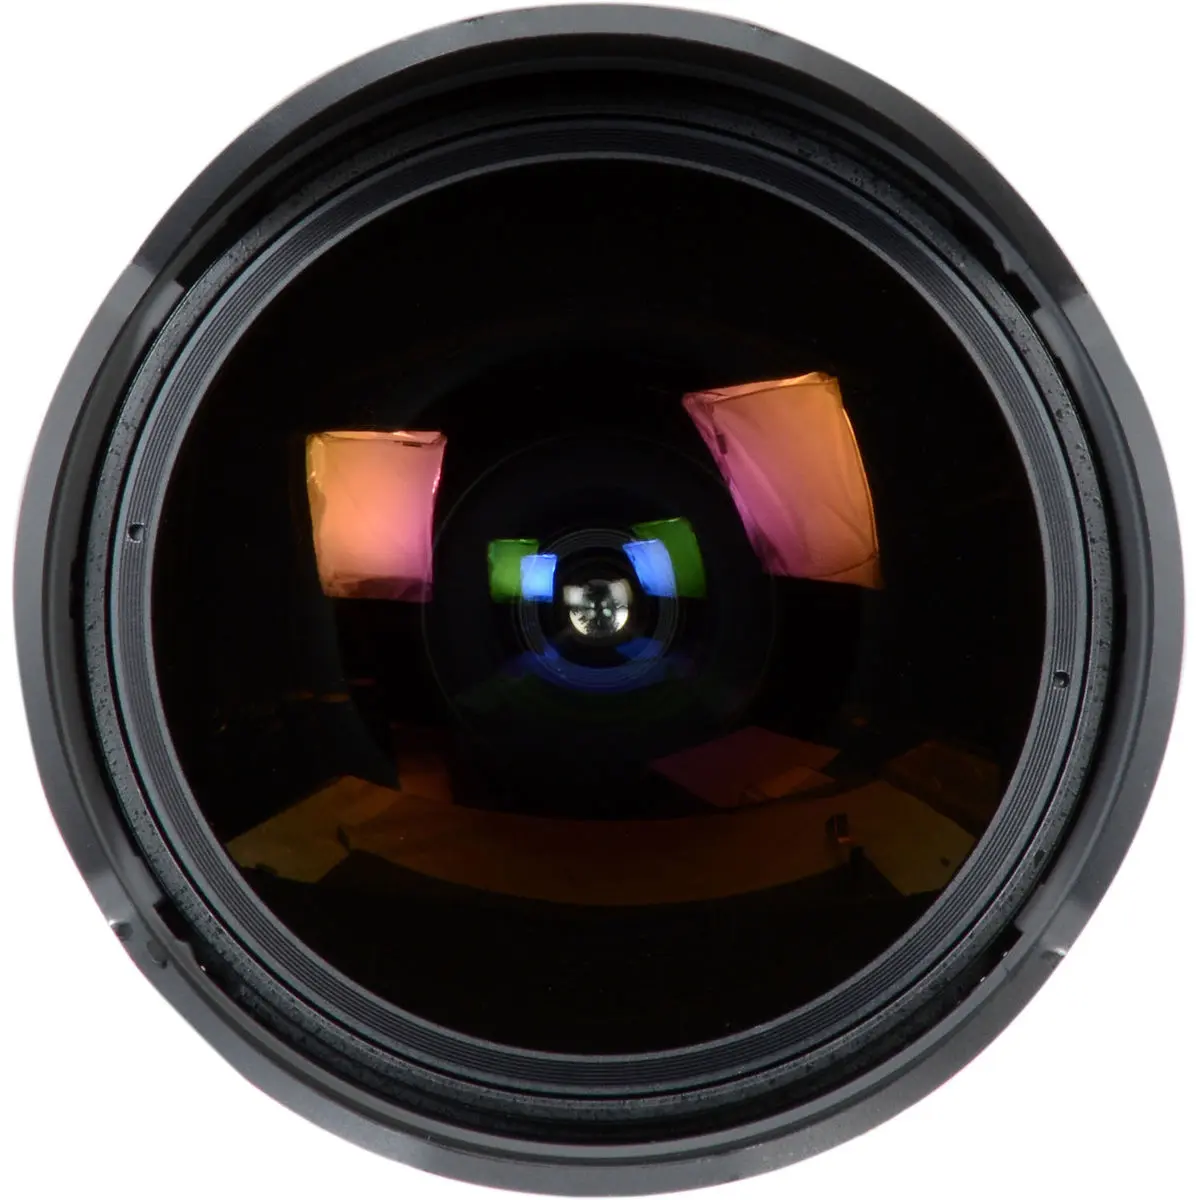 6. Samyang 12mm T3.1 VDSLR ED AS NCS Fisheye Lens for Canon